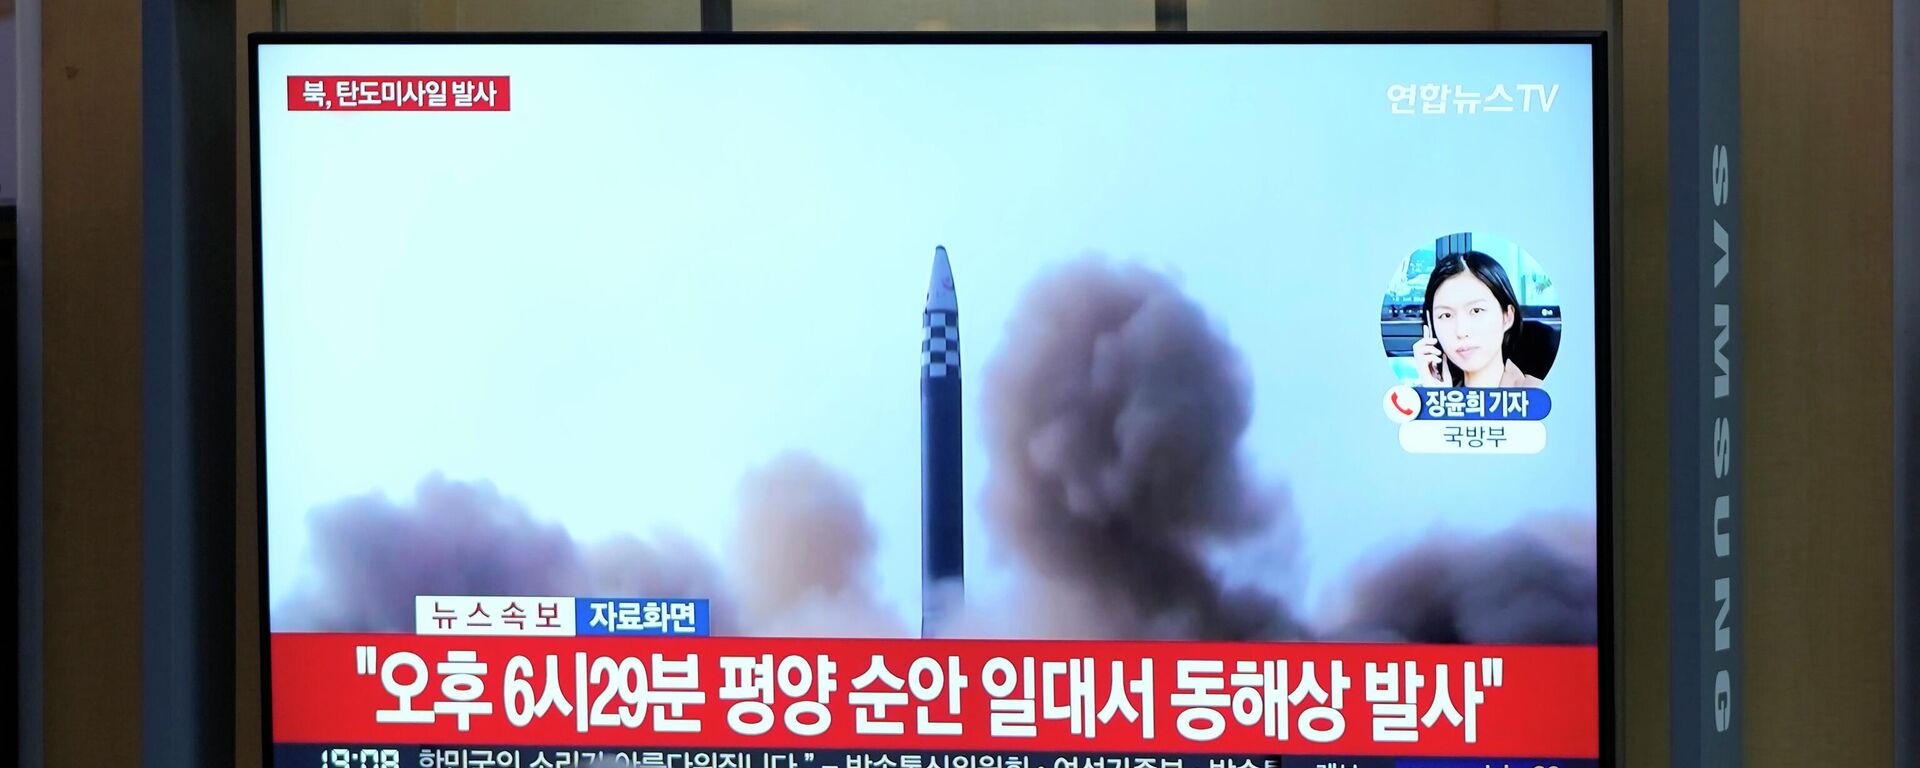 El lanzamiento de prueba de misil en Corea del Norte - Sputnik Mundo, 1920, 14.06.2022